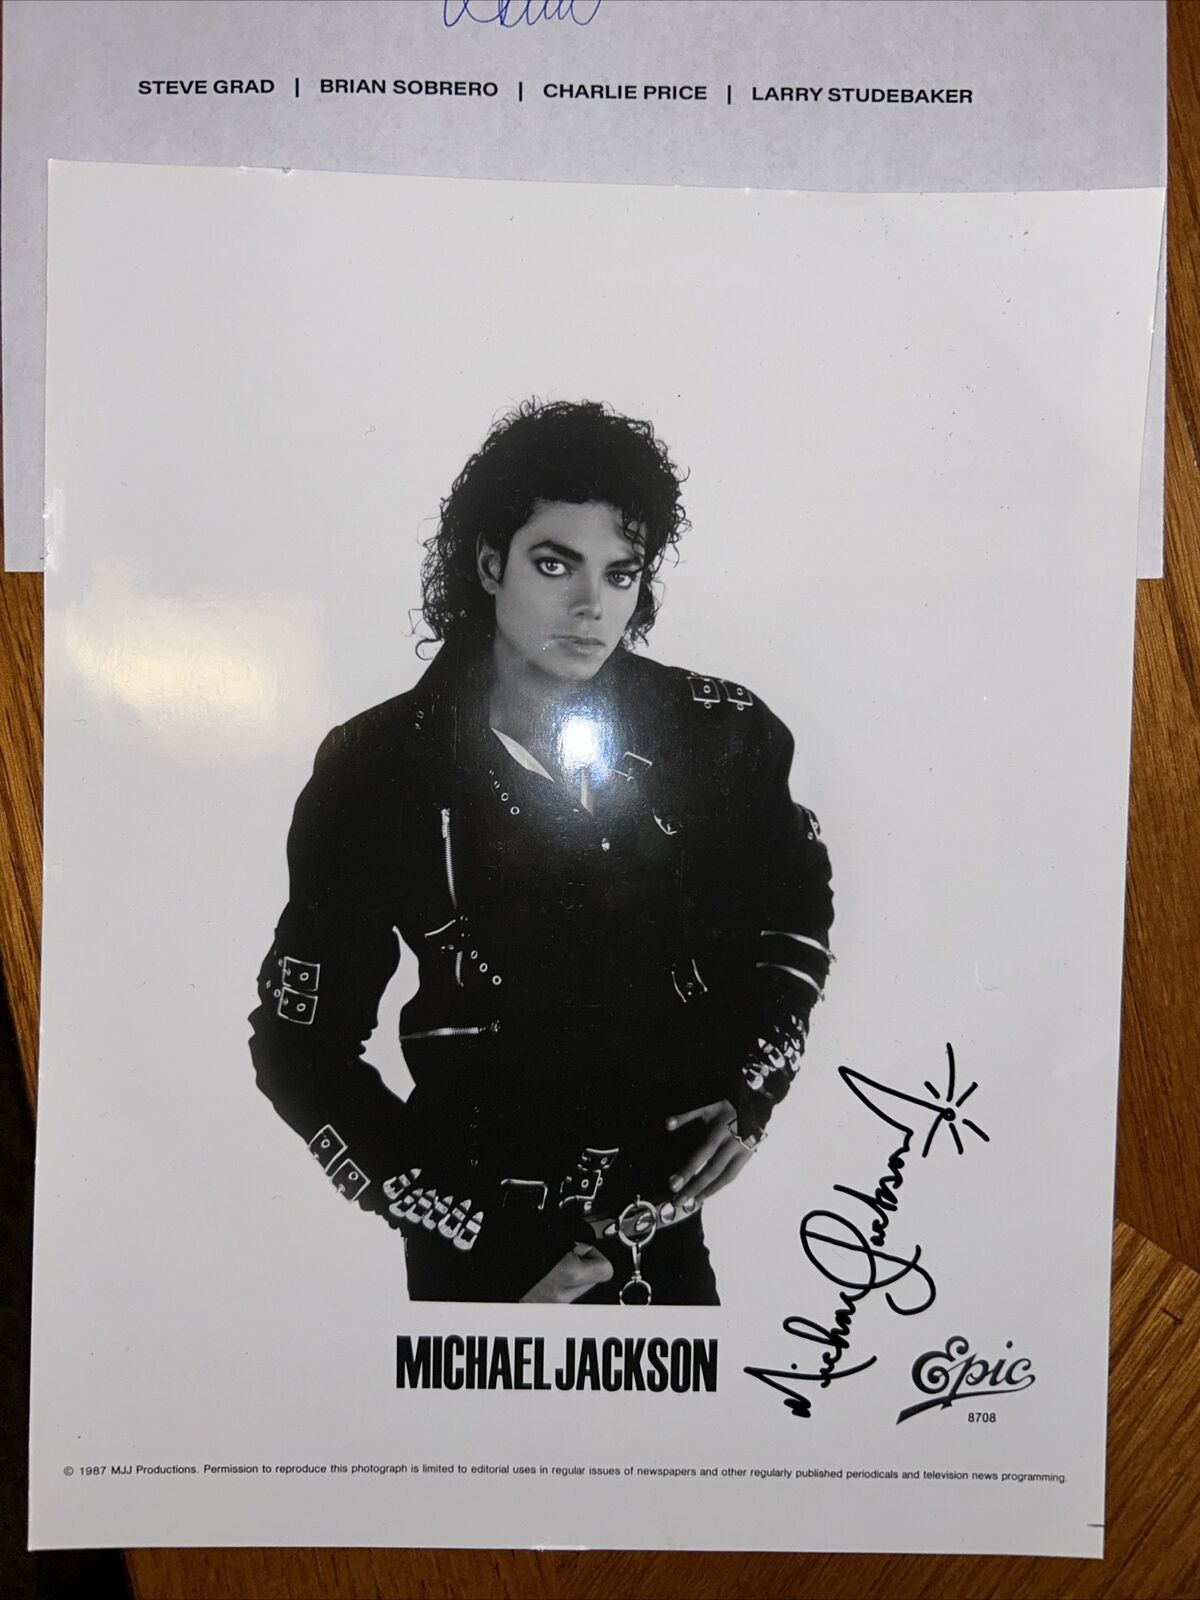 Michael Jackson Signature 1987 Photo - Printed Facsimile Reproduction